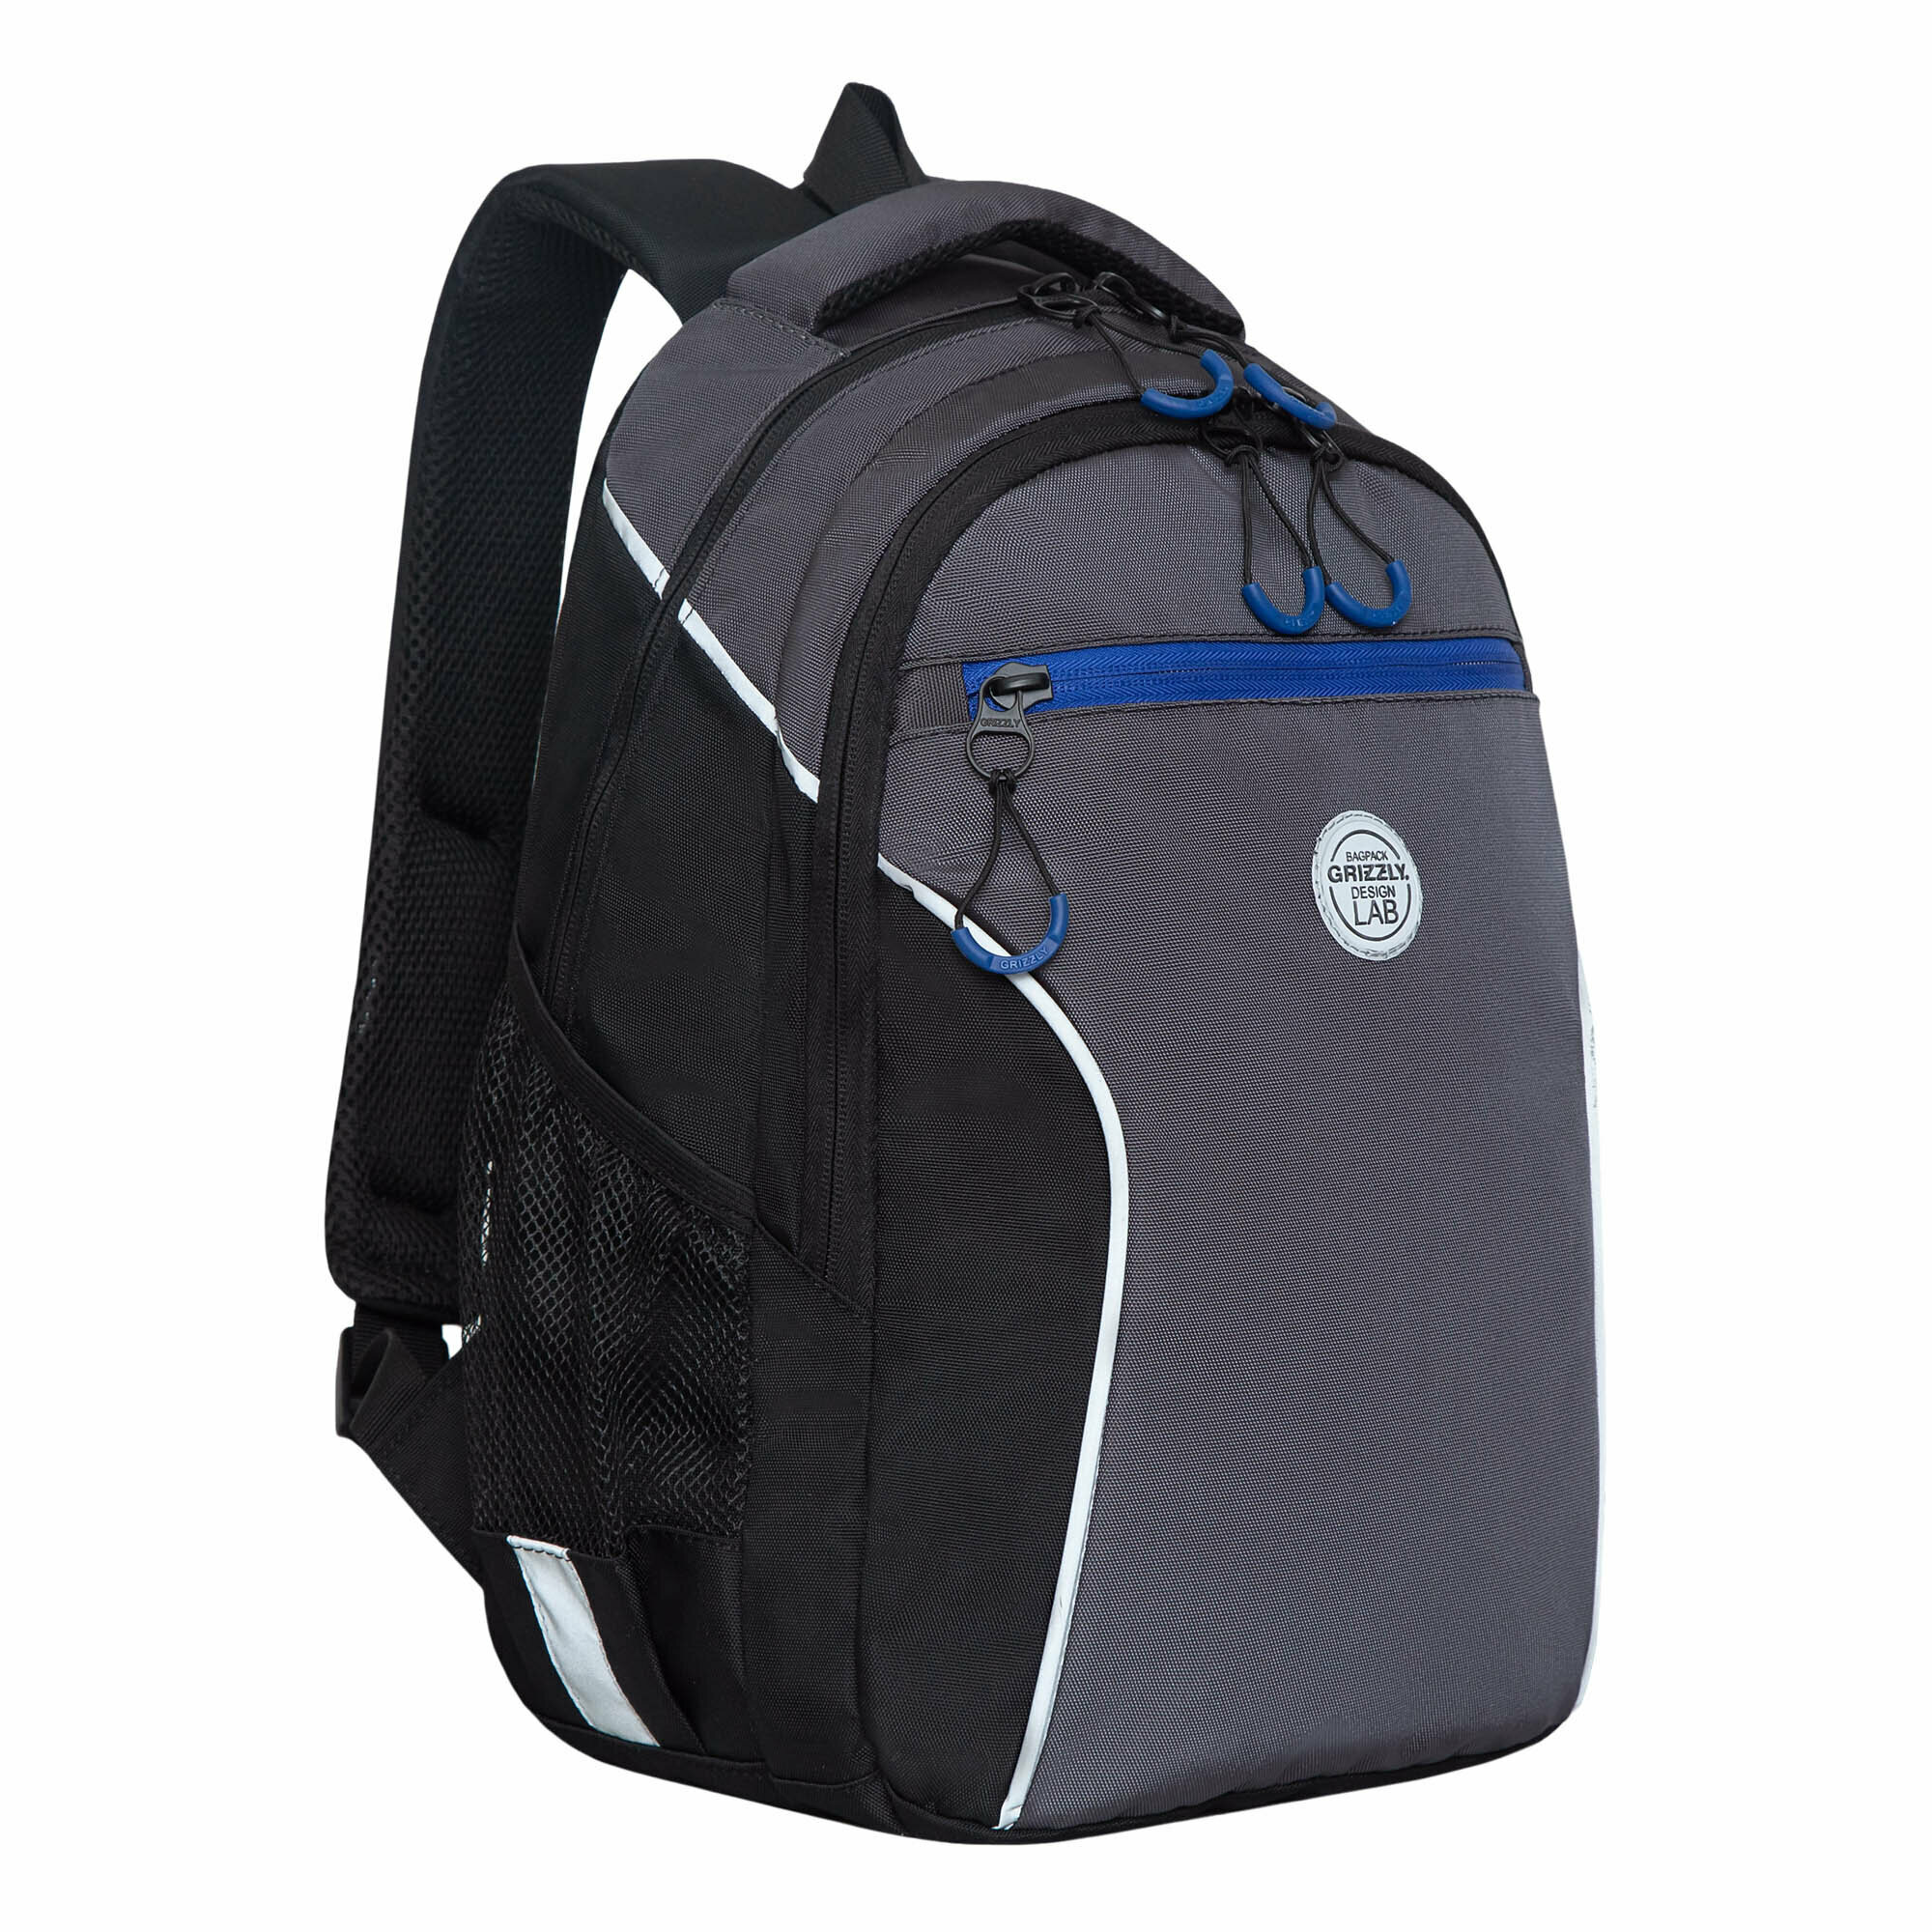 Рюкзак школьный с карманом для ноутбука 13", анатомической спинкой, для мальчика RB-259-3/2